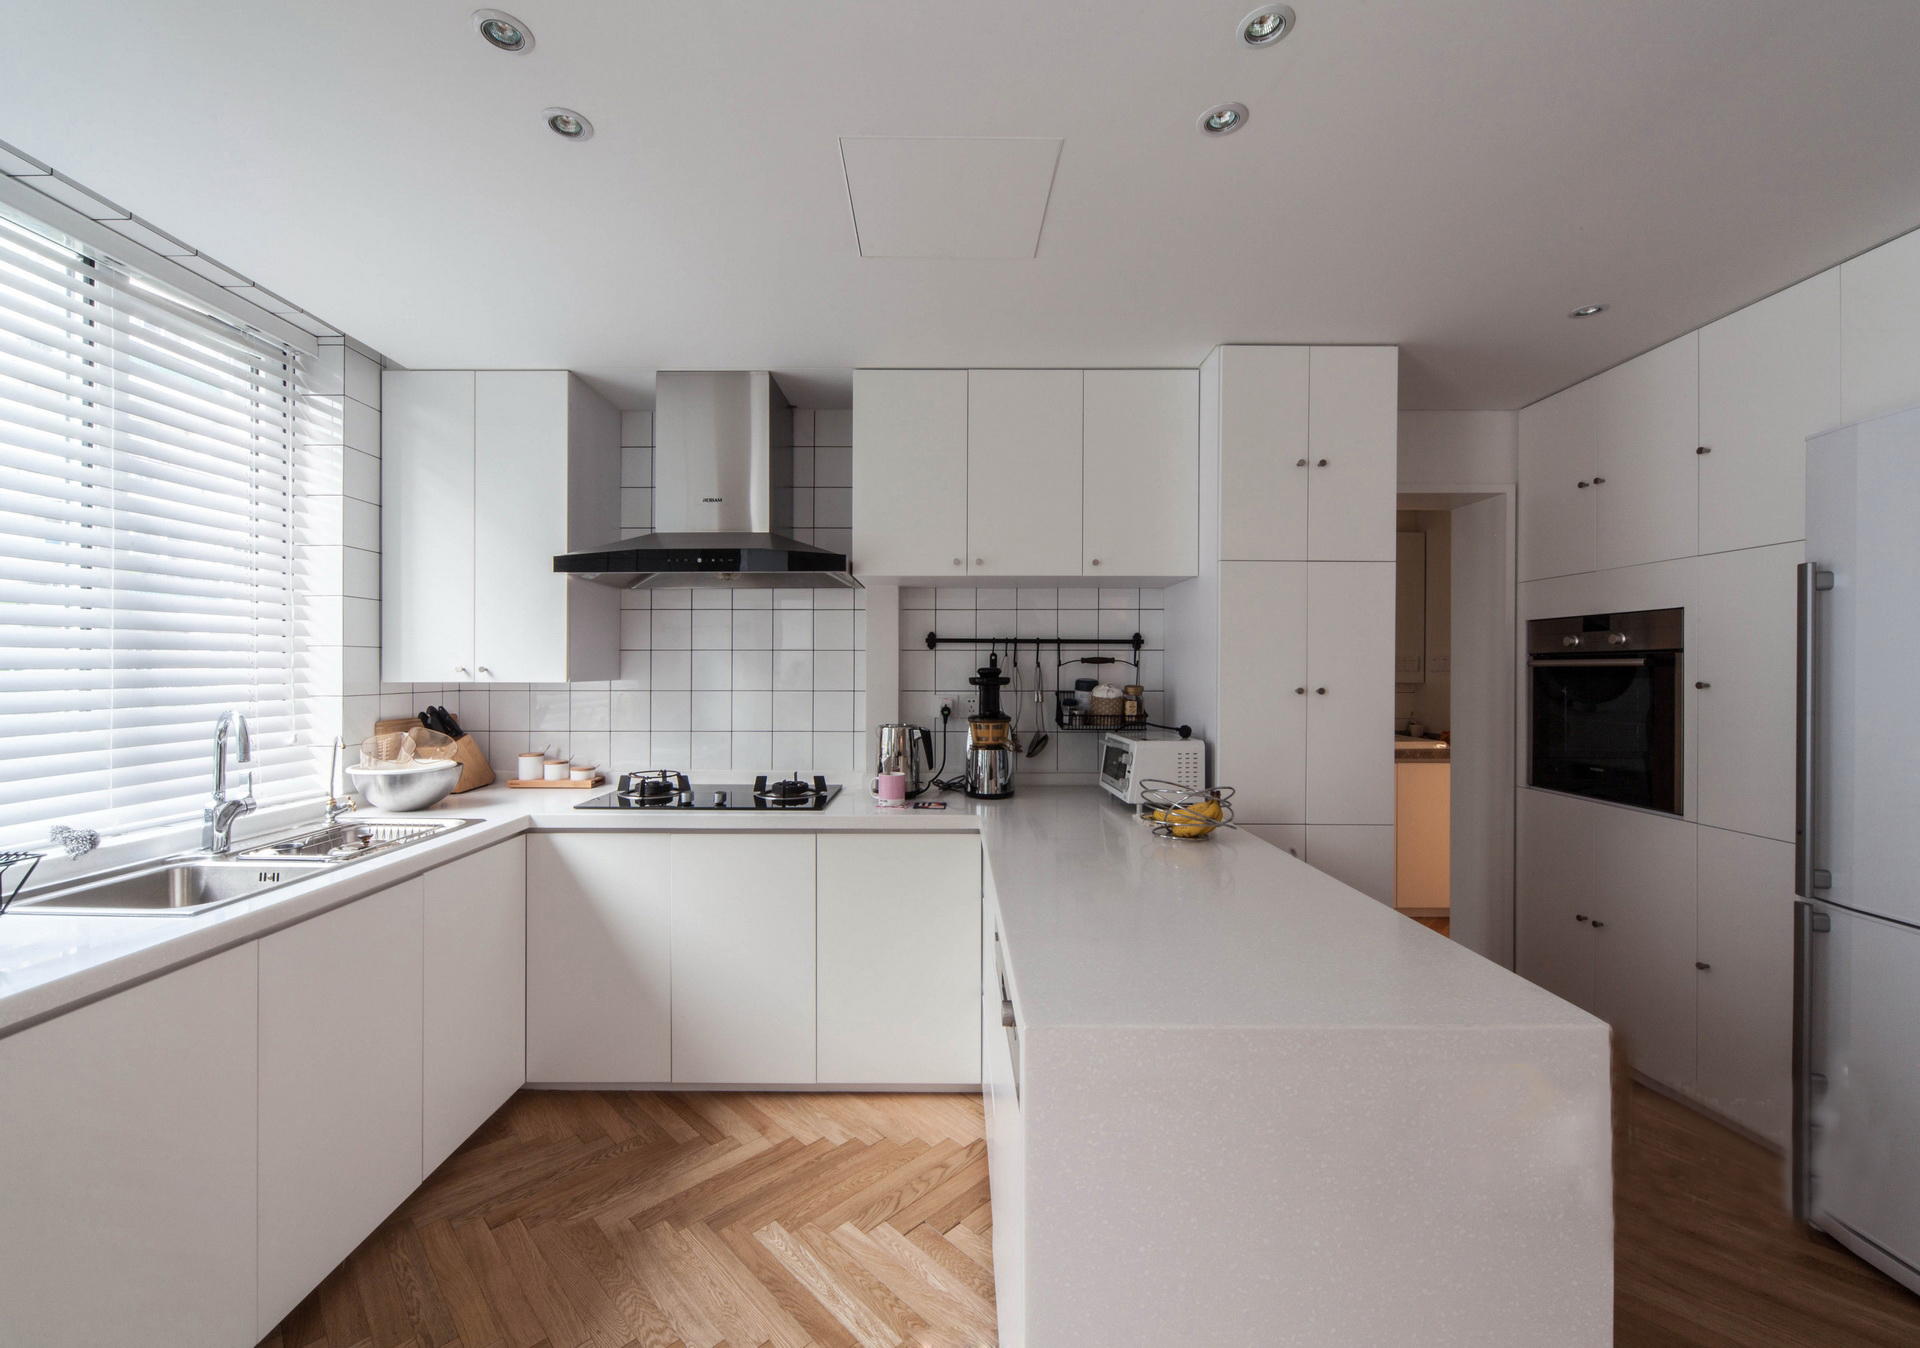 北欧阳光 白色温暖厨房 开放式设计